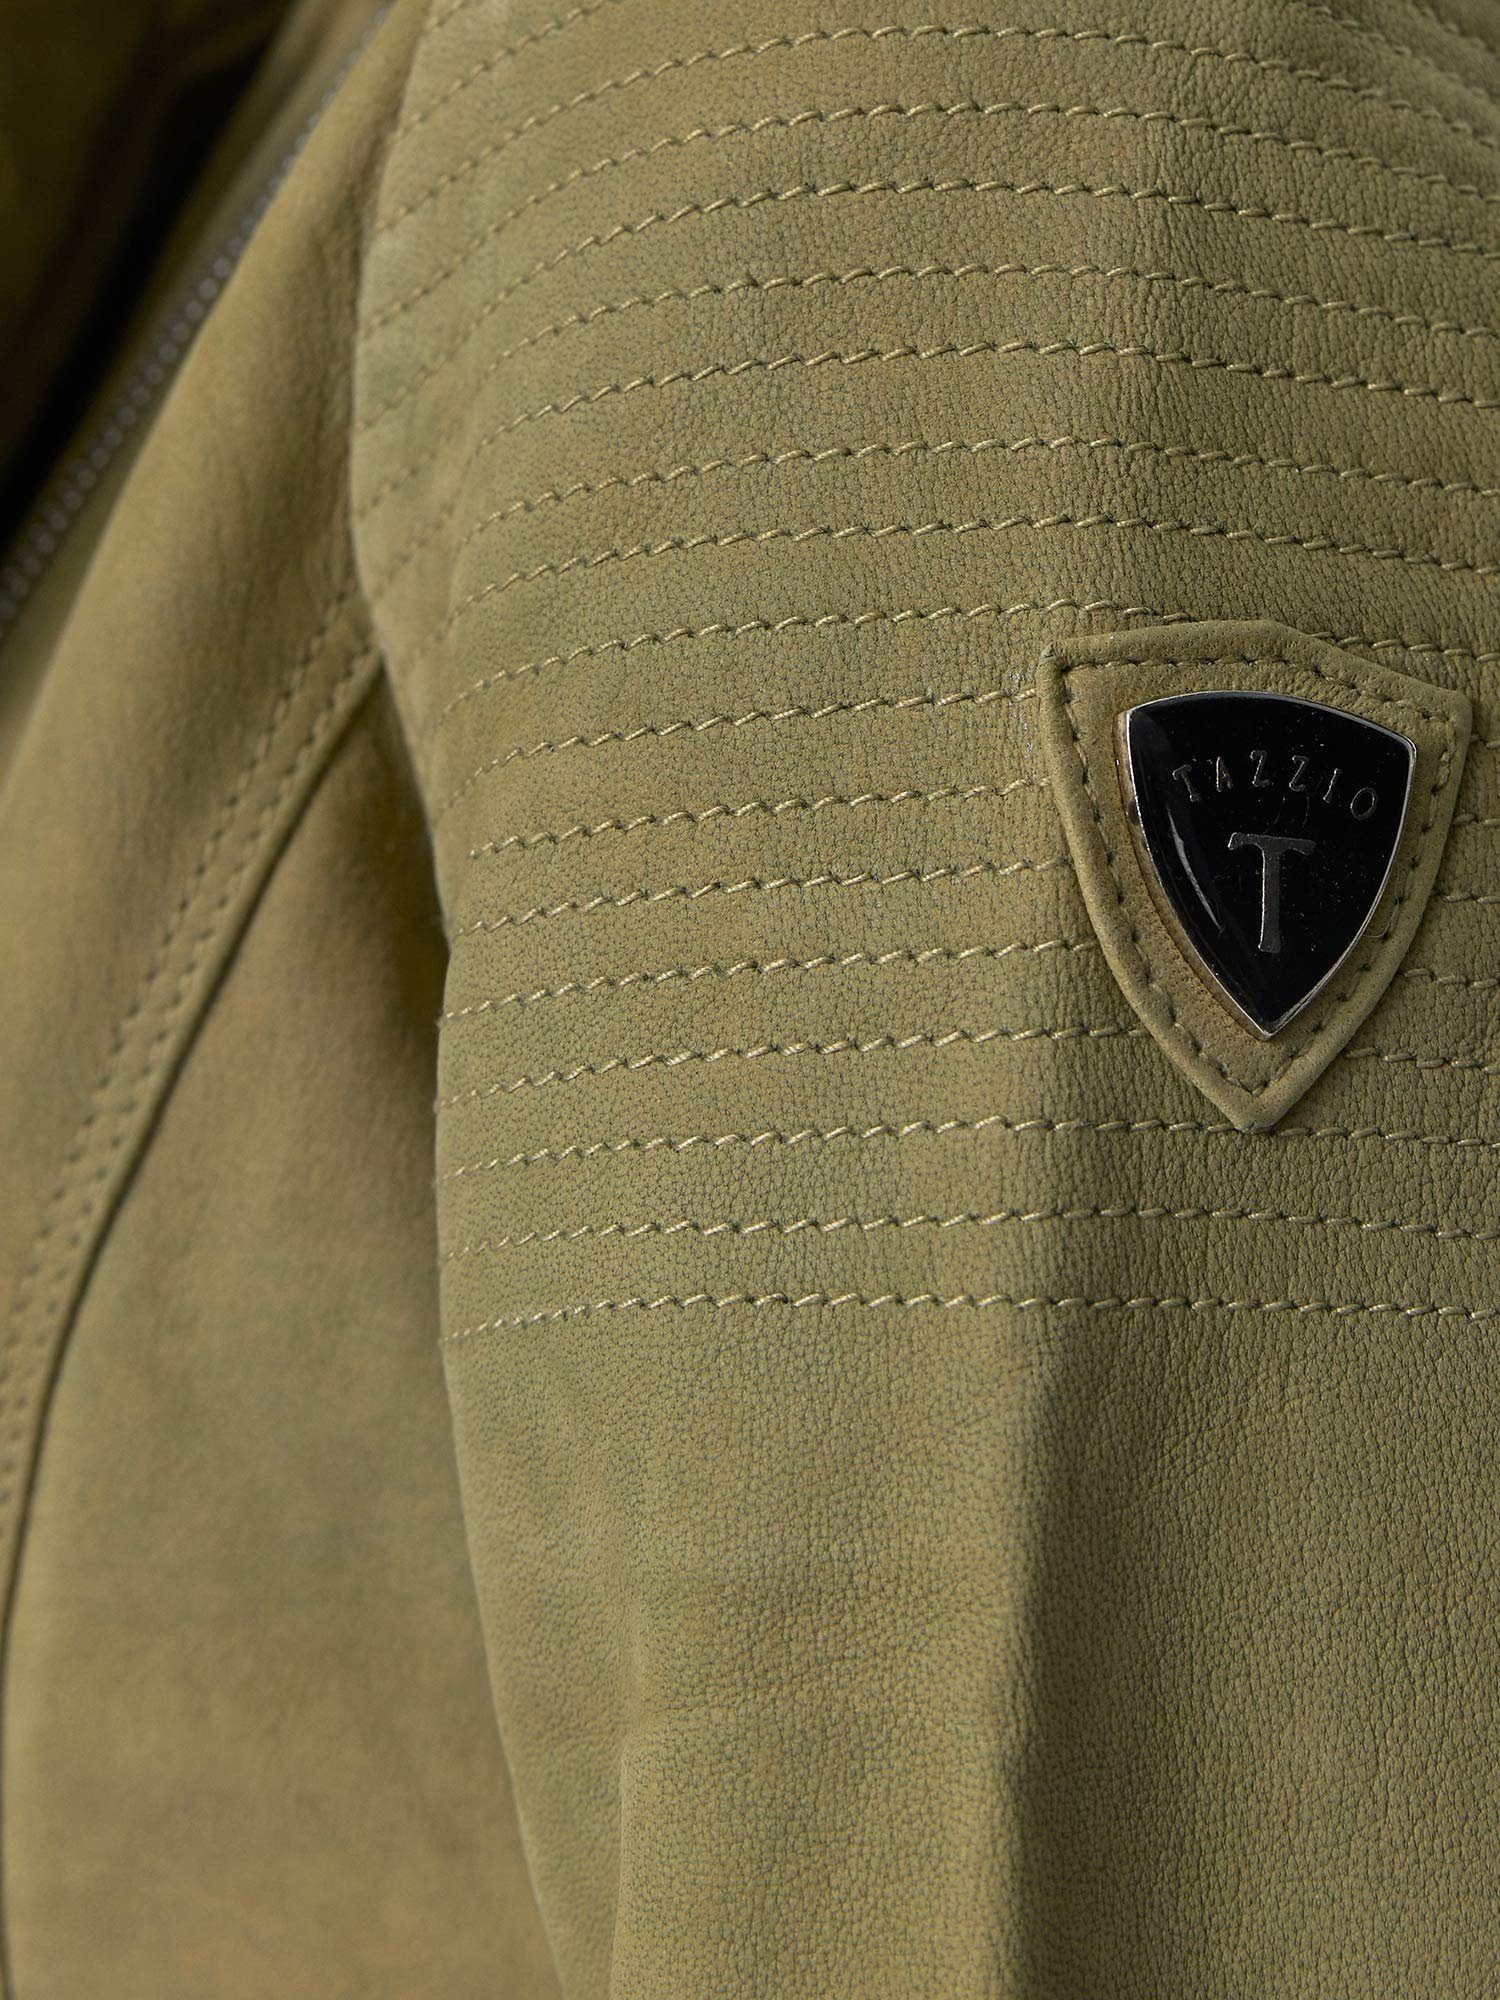 grün Reverskragen Tazzio mit Damen Biker F500 Jacke Lederjacke & Look im Leder Zipper-Details